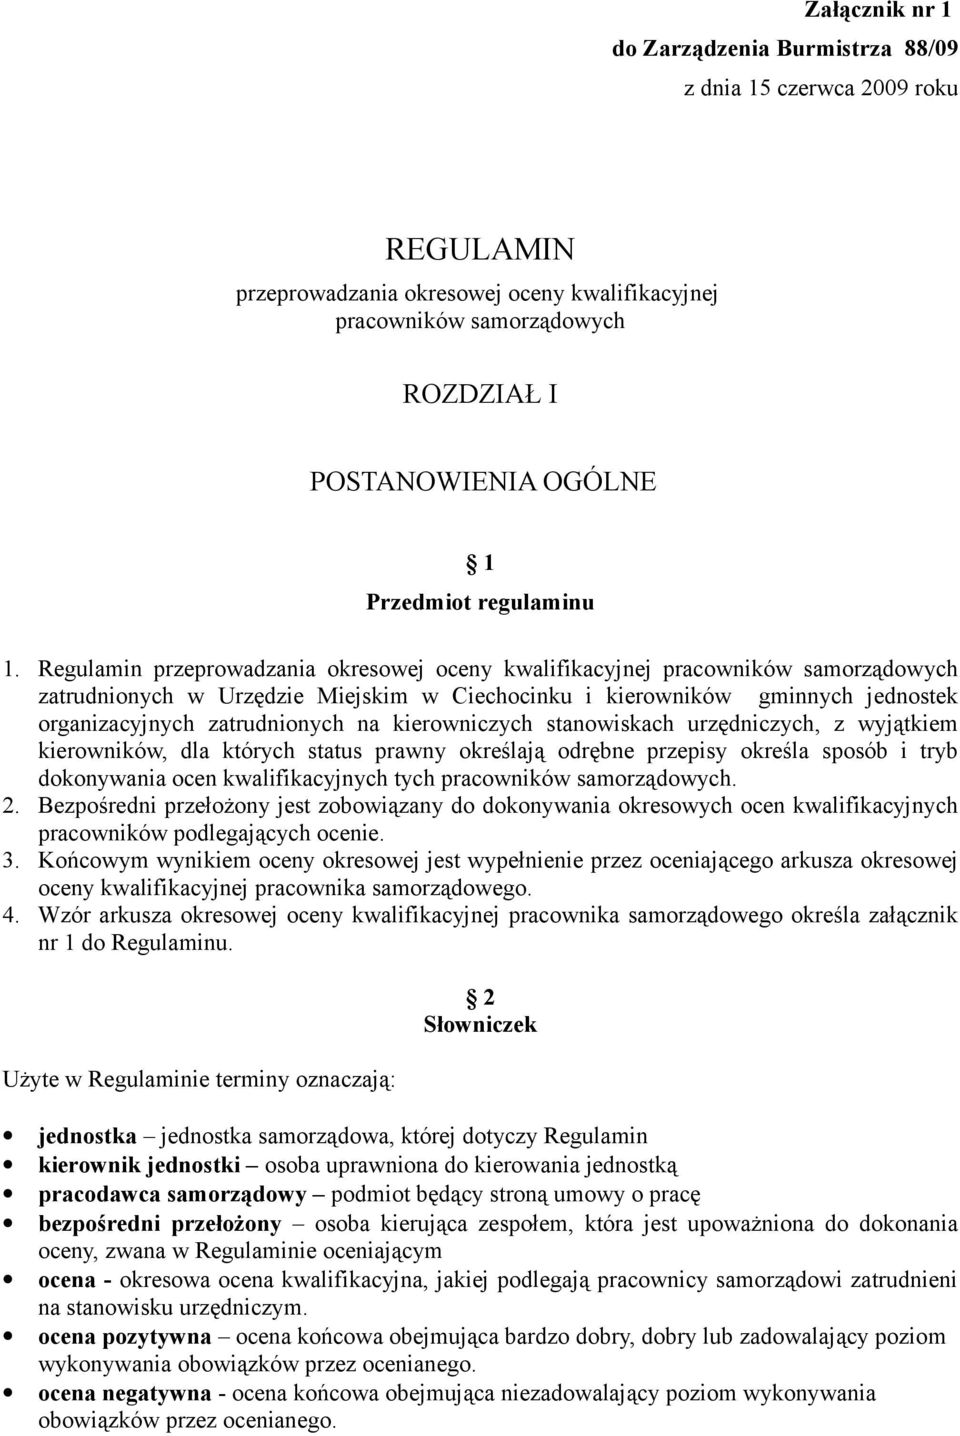 Regulamin przeprowadzania okresowej oceny kwalifikacyjnej pracowników samorządowych zatrudnionych w Urzędzie Miejskim w Ciechocinku i kierowników gminnych jednostek organizacyjnych zatrudnionych na